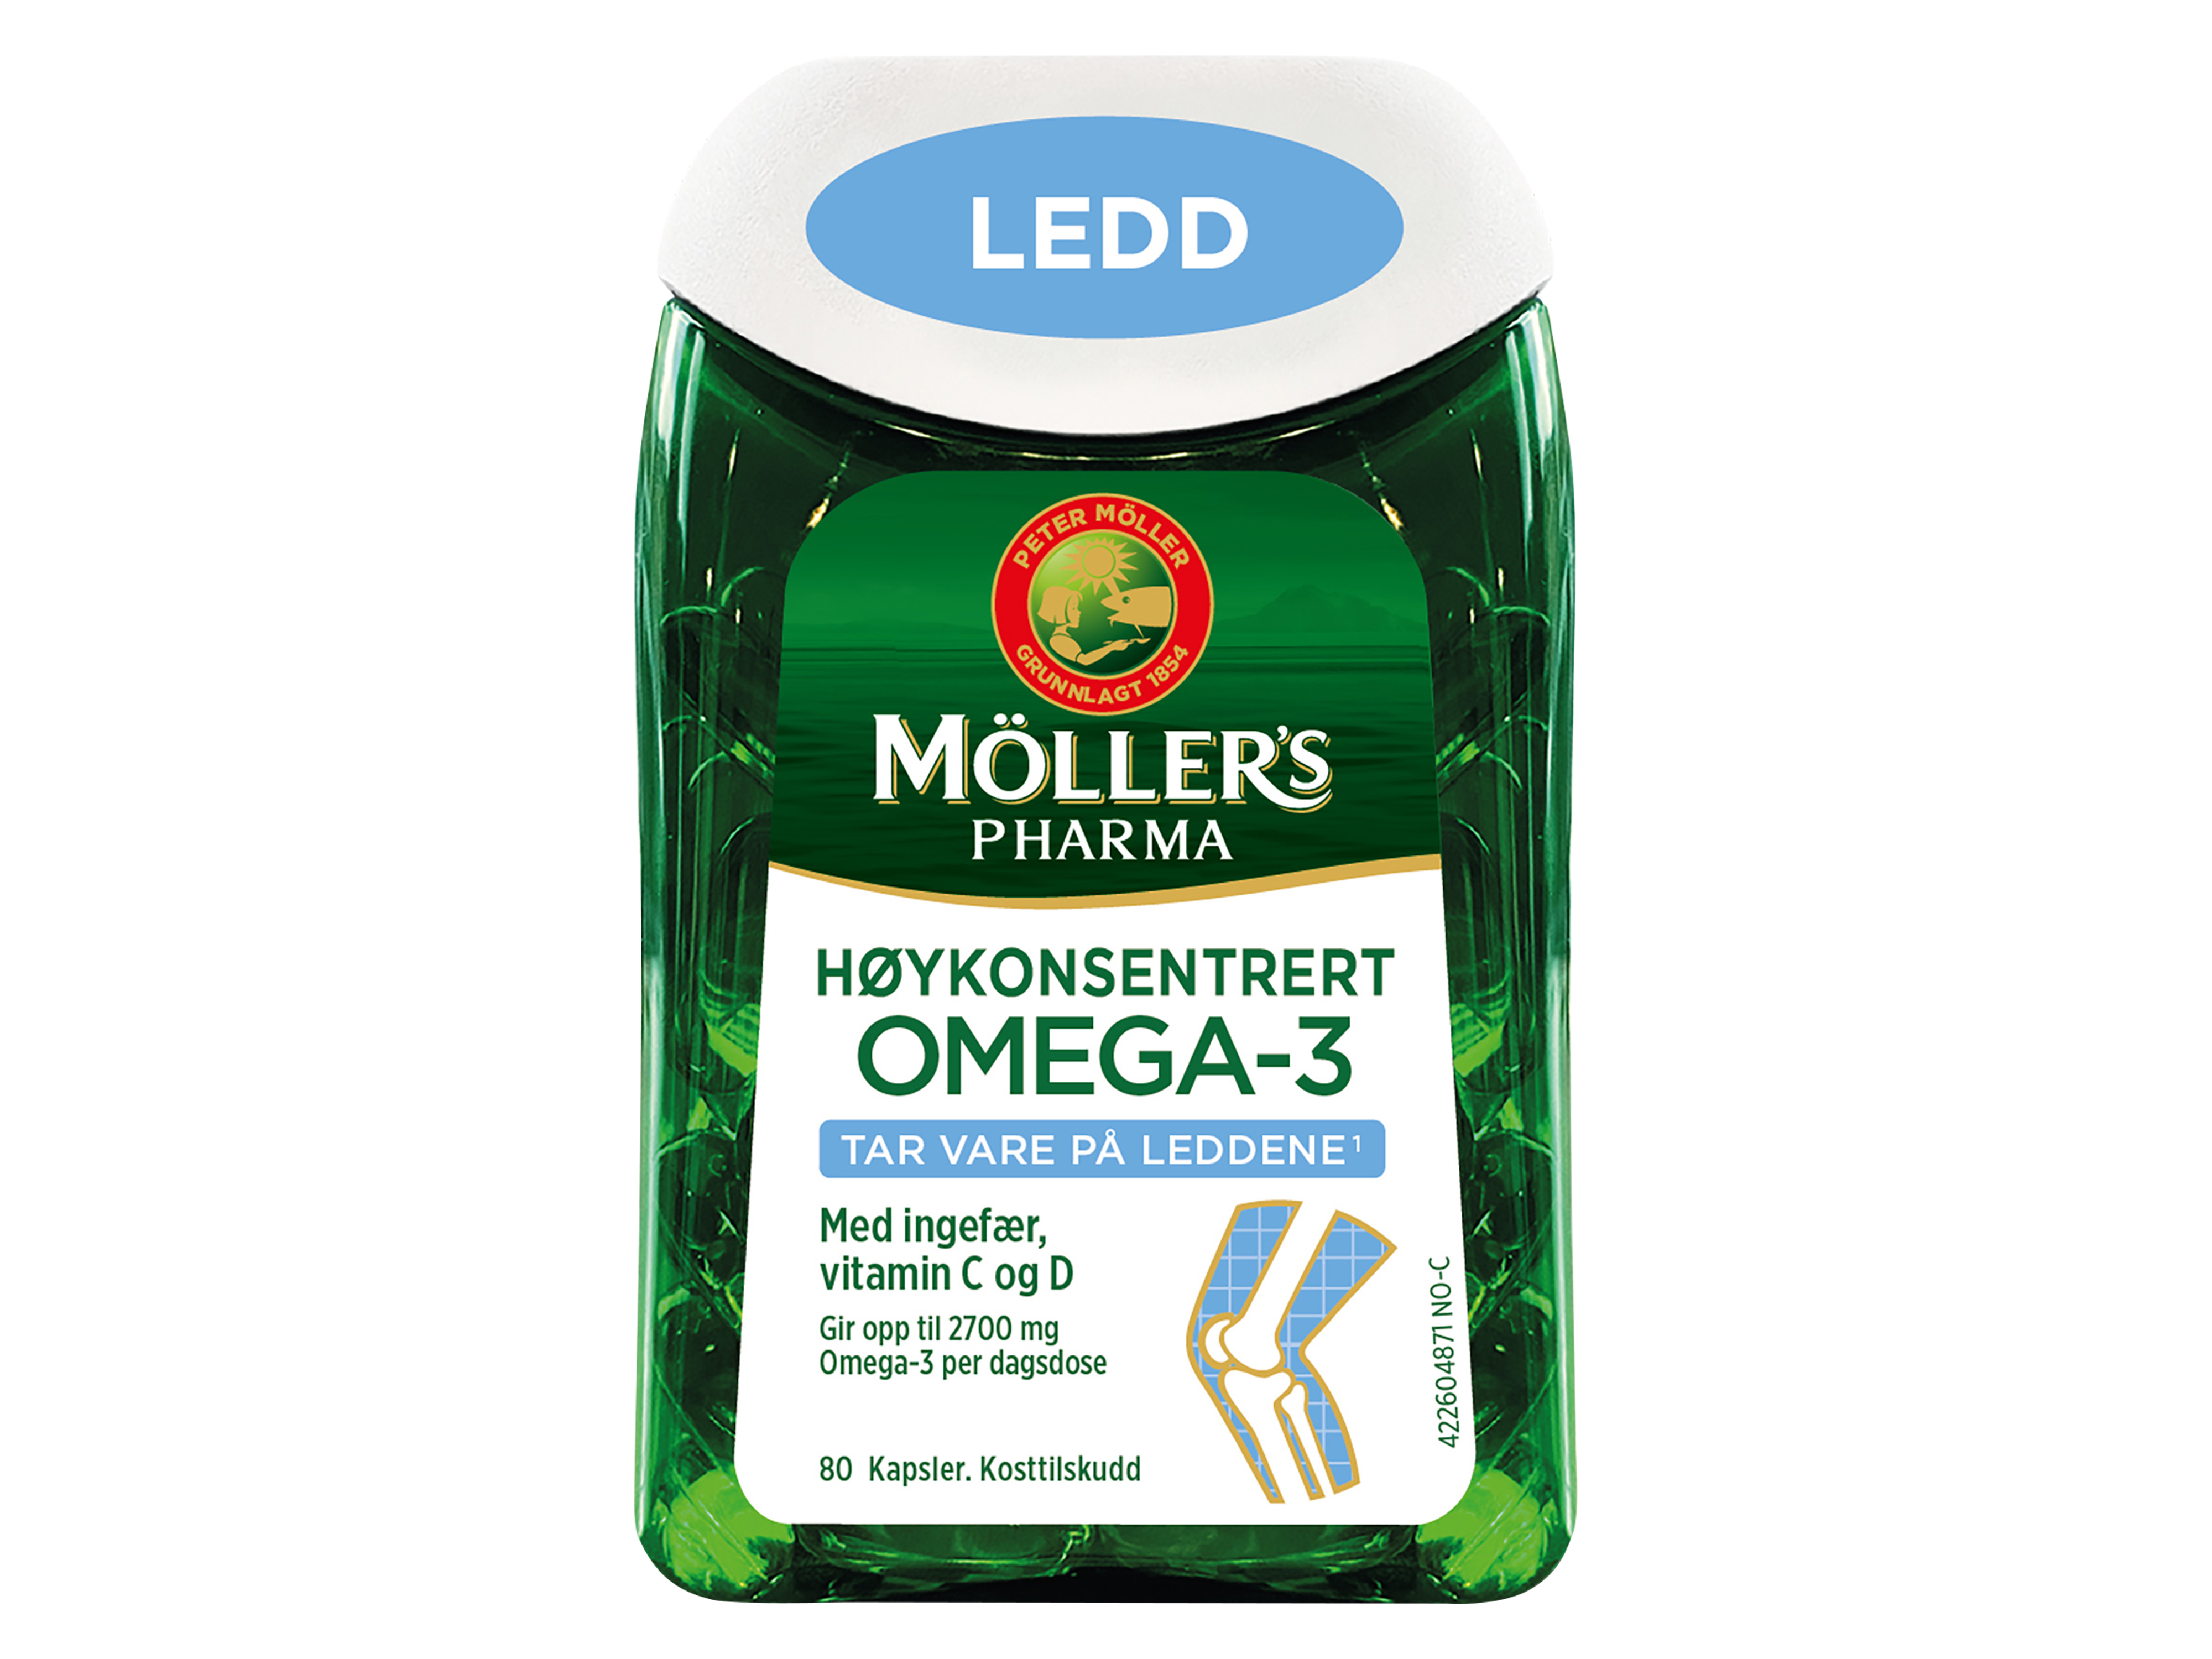 Möller's Pharma Omega-3 Ledd, 80 kapsler